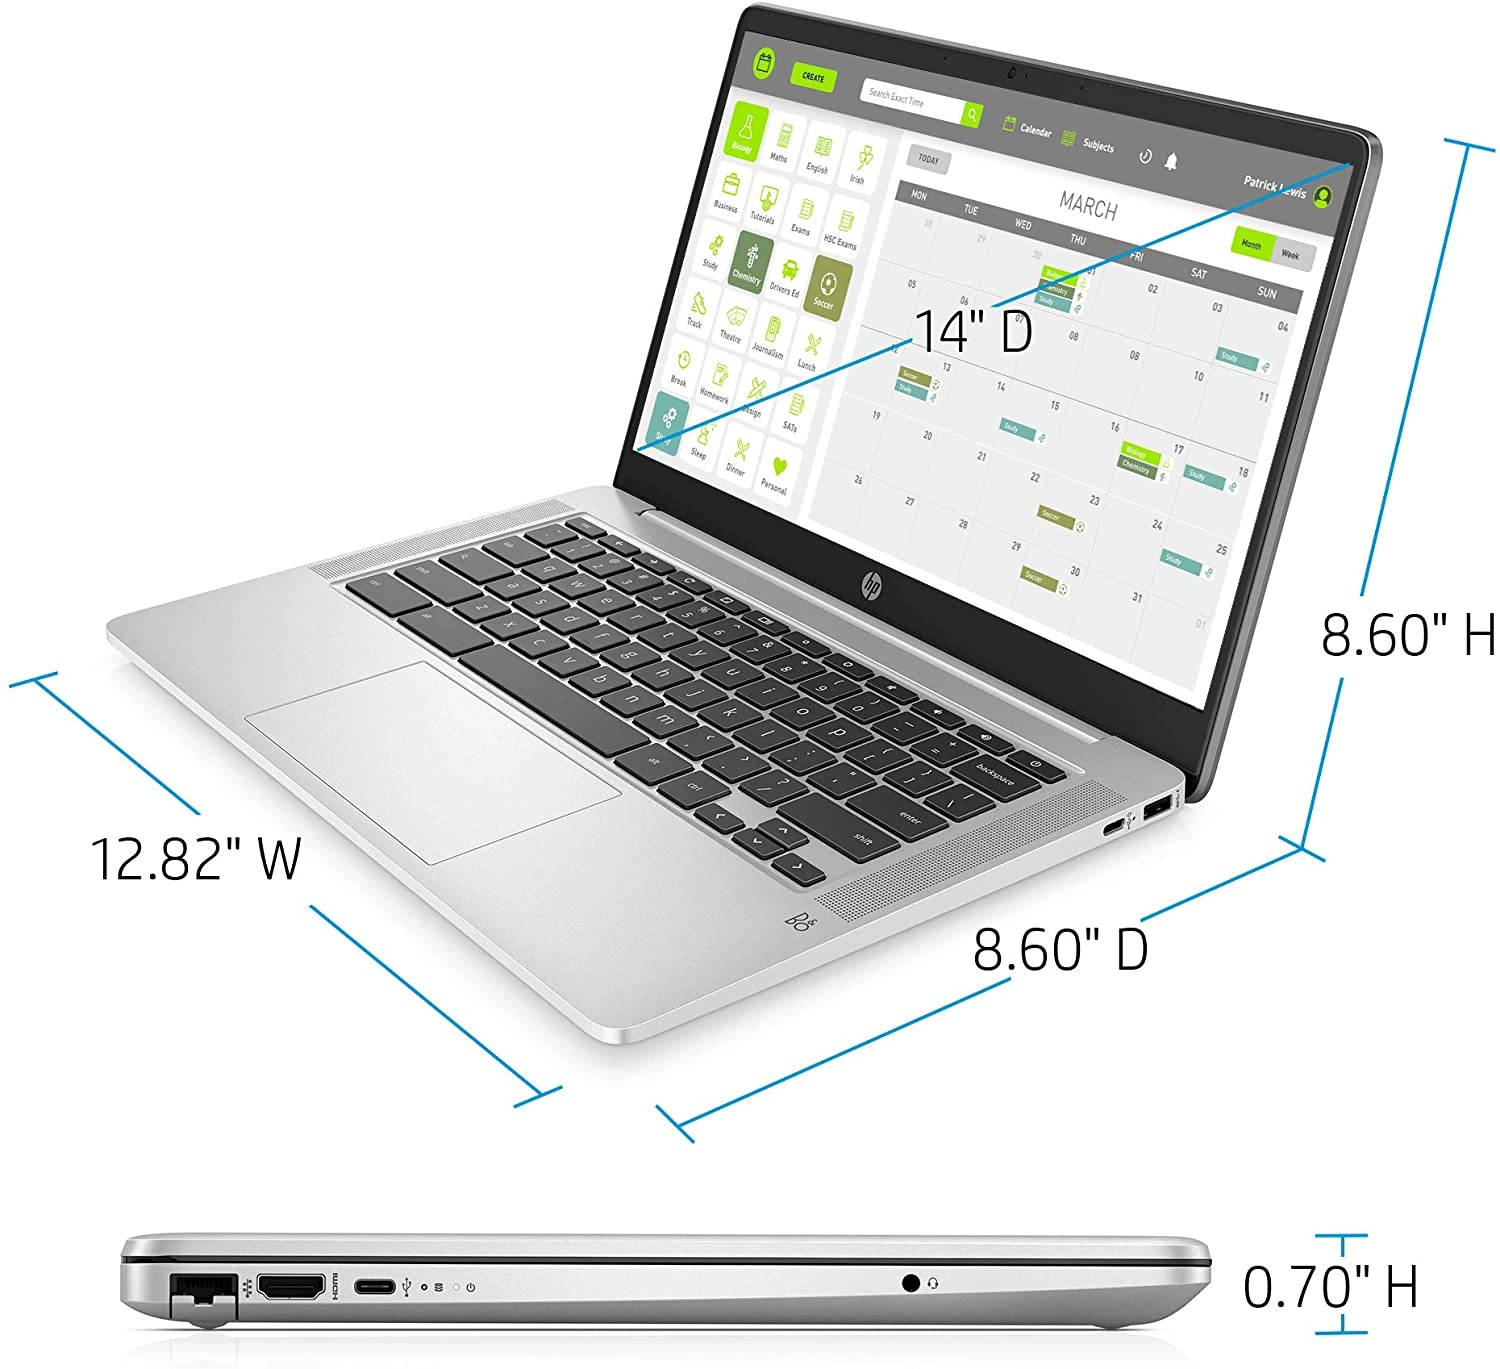 HP 1464C laptop image